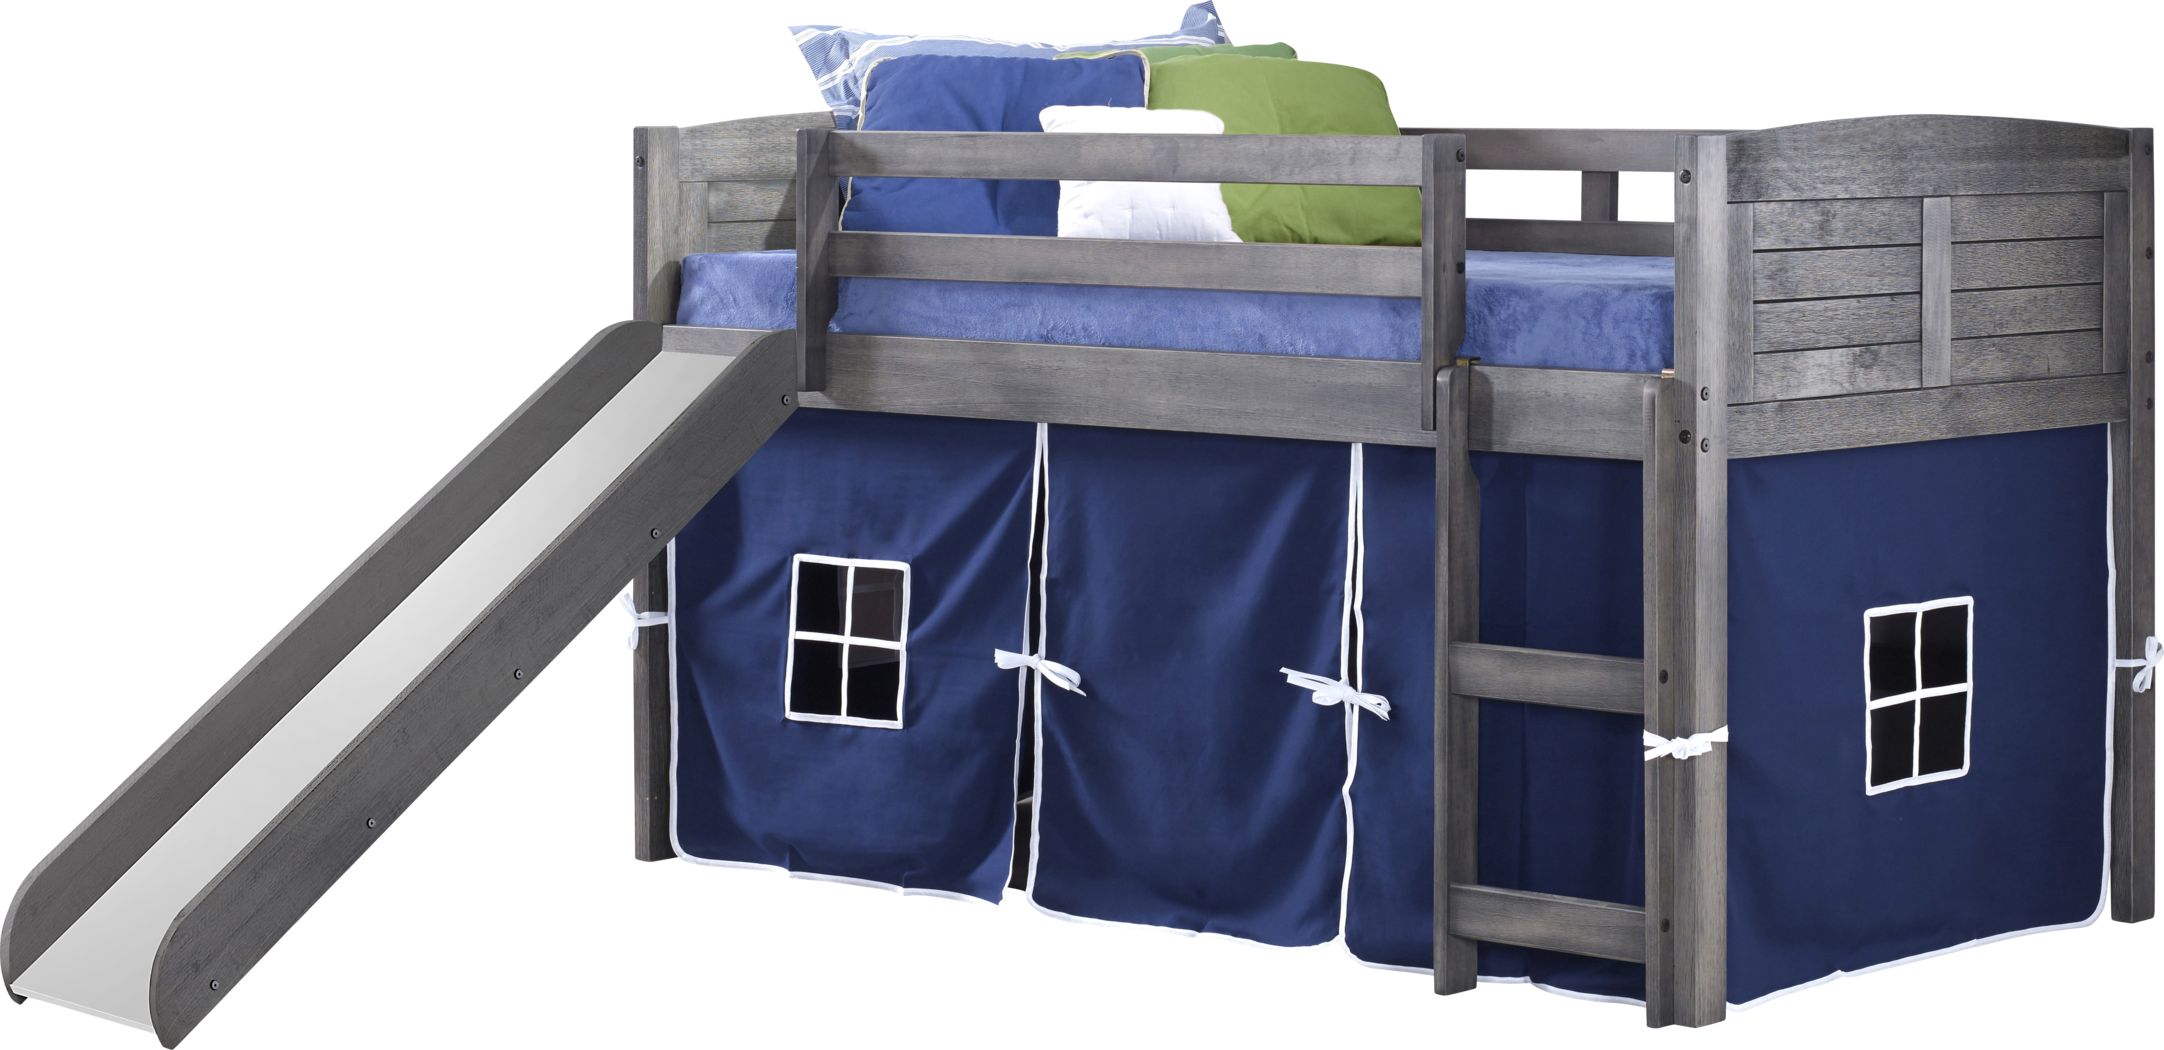 Bunk Beds For Kids, Jr Bunk Beds